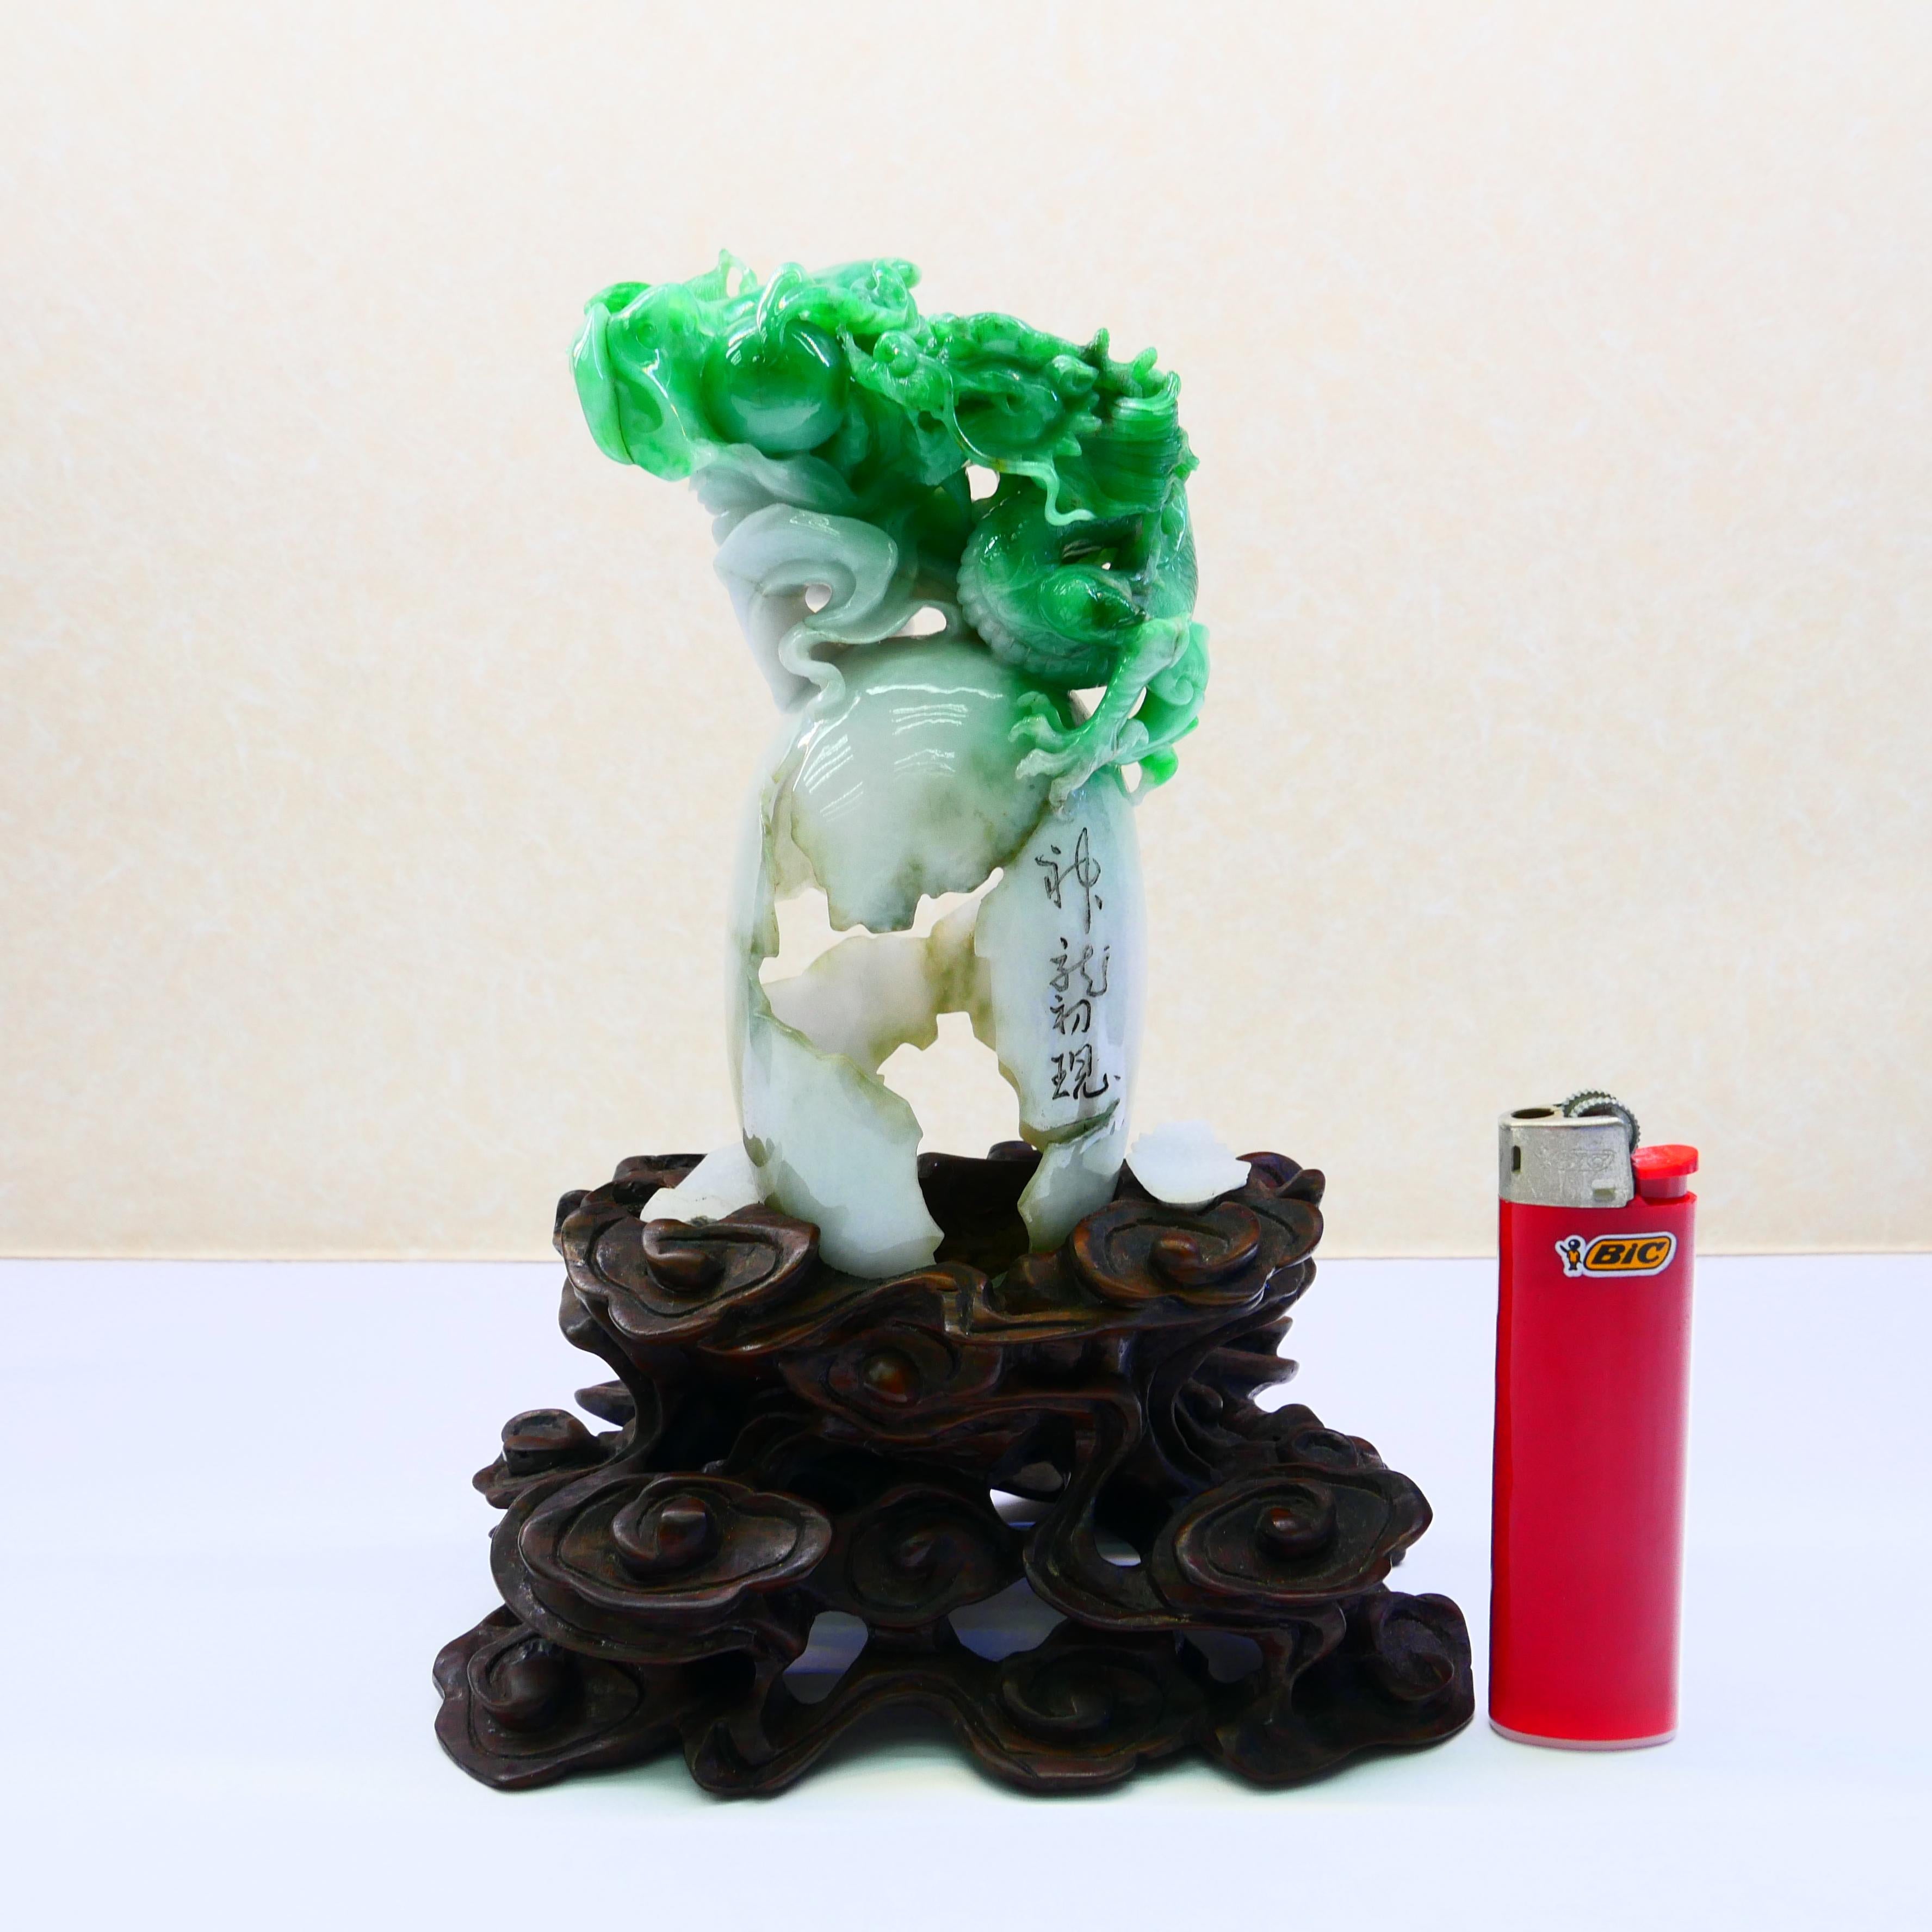 Aus unserer umfangreichen Jade-Kollektion ist hier ein weiteres Exemplar, das zu einer wichtigen Sammlung hinzugefügt werden kann. Dieses Stück wurde vor mindestens 50 Jahren geschnitzt! Dieses Jadestück ist ein zertifiziertes Naturprodukt ohne